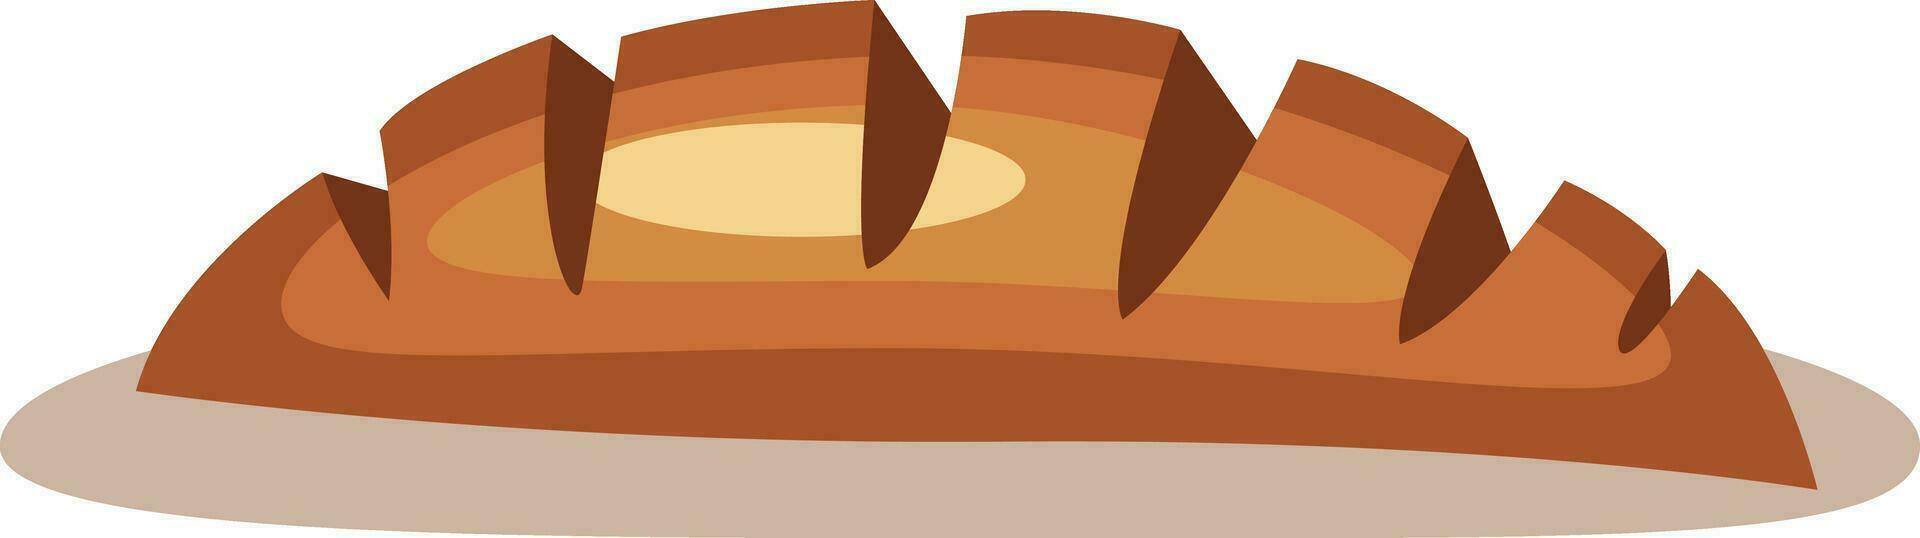 Chocolat gâteau vecteur Couleur illustration.